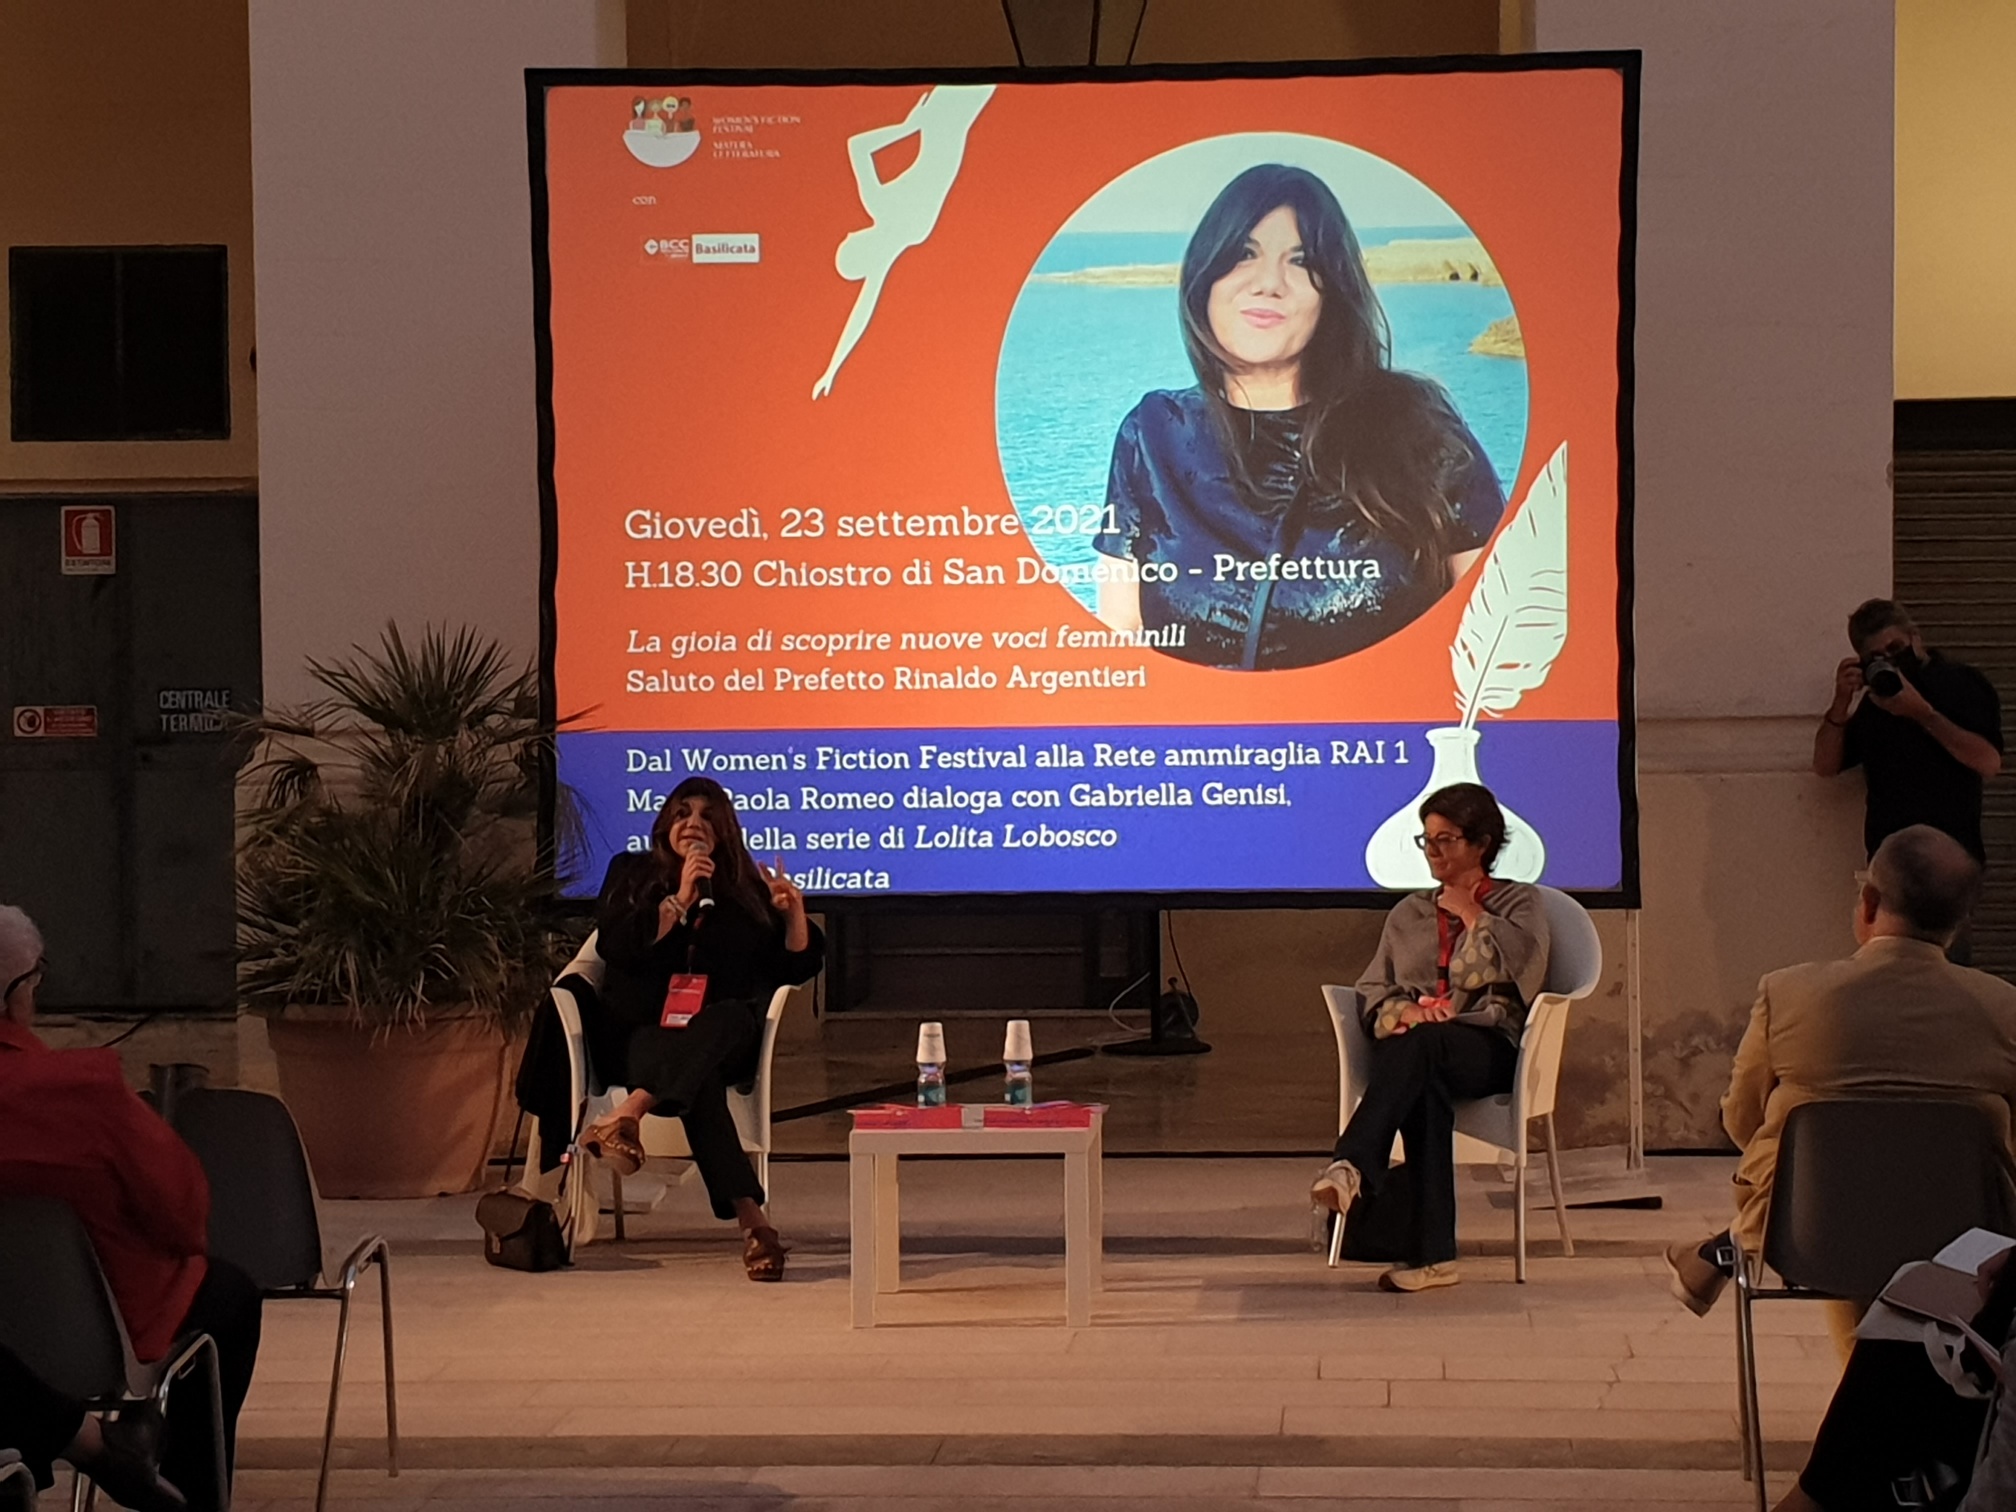 Gabriella Genisi: “Il Women’s Fiction Festival mi ha cambiato la vita”